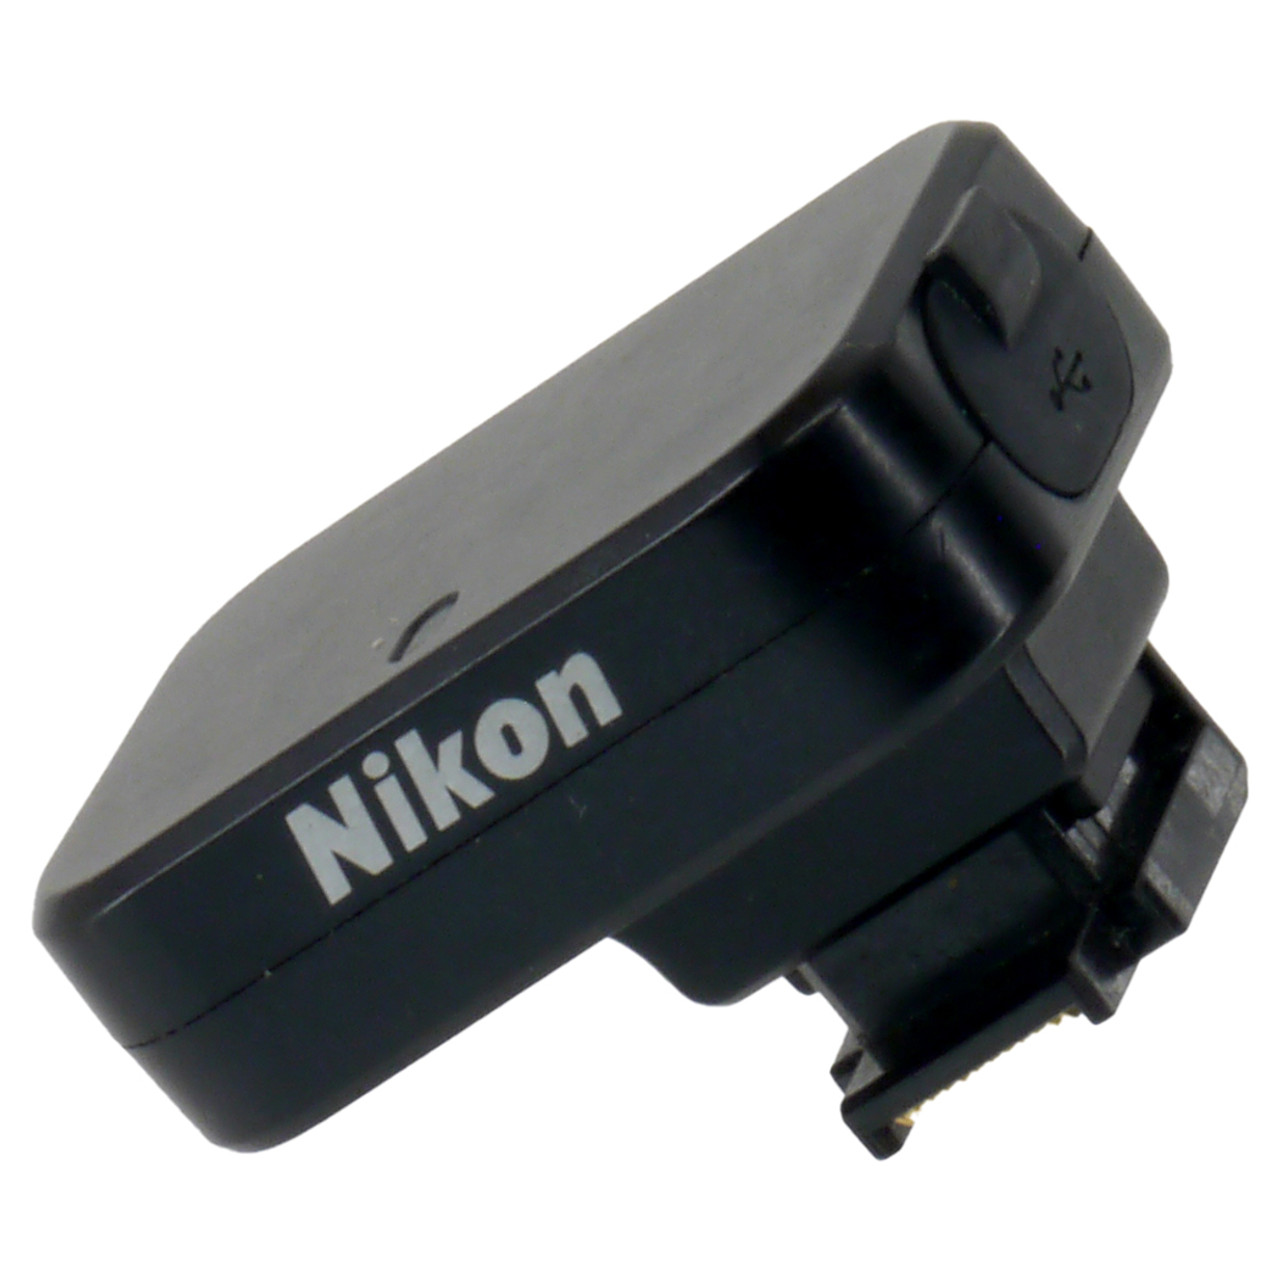 USED NIKON GP-N100 GPS RECEIVER